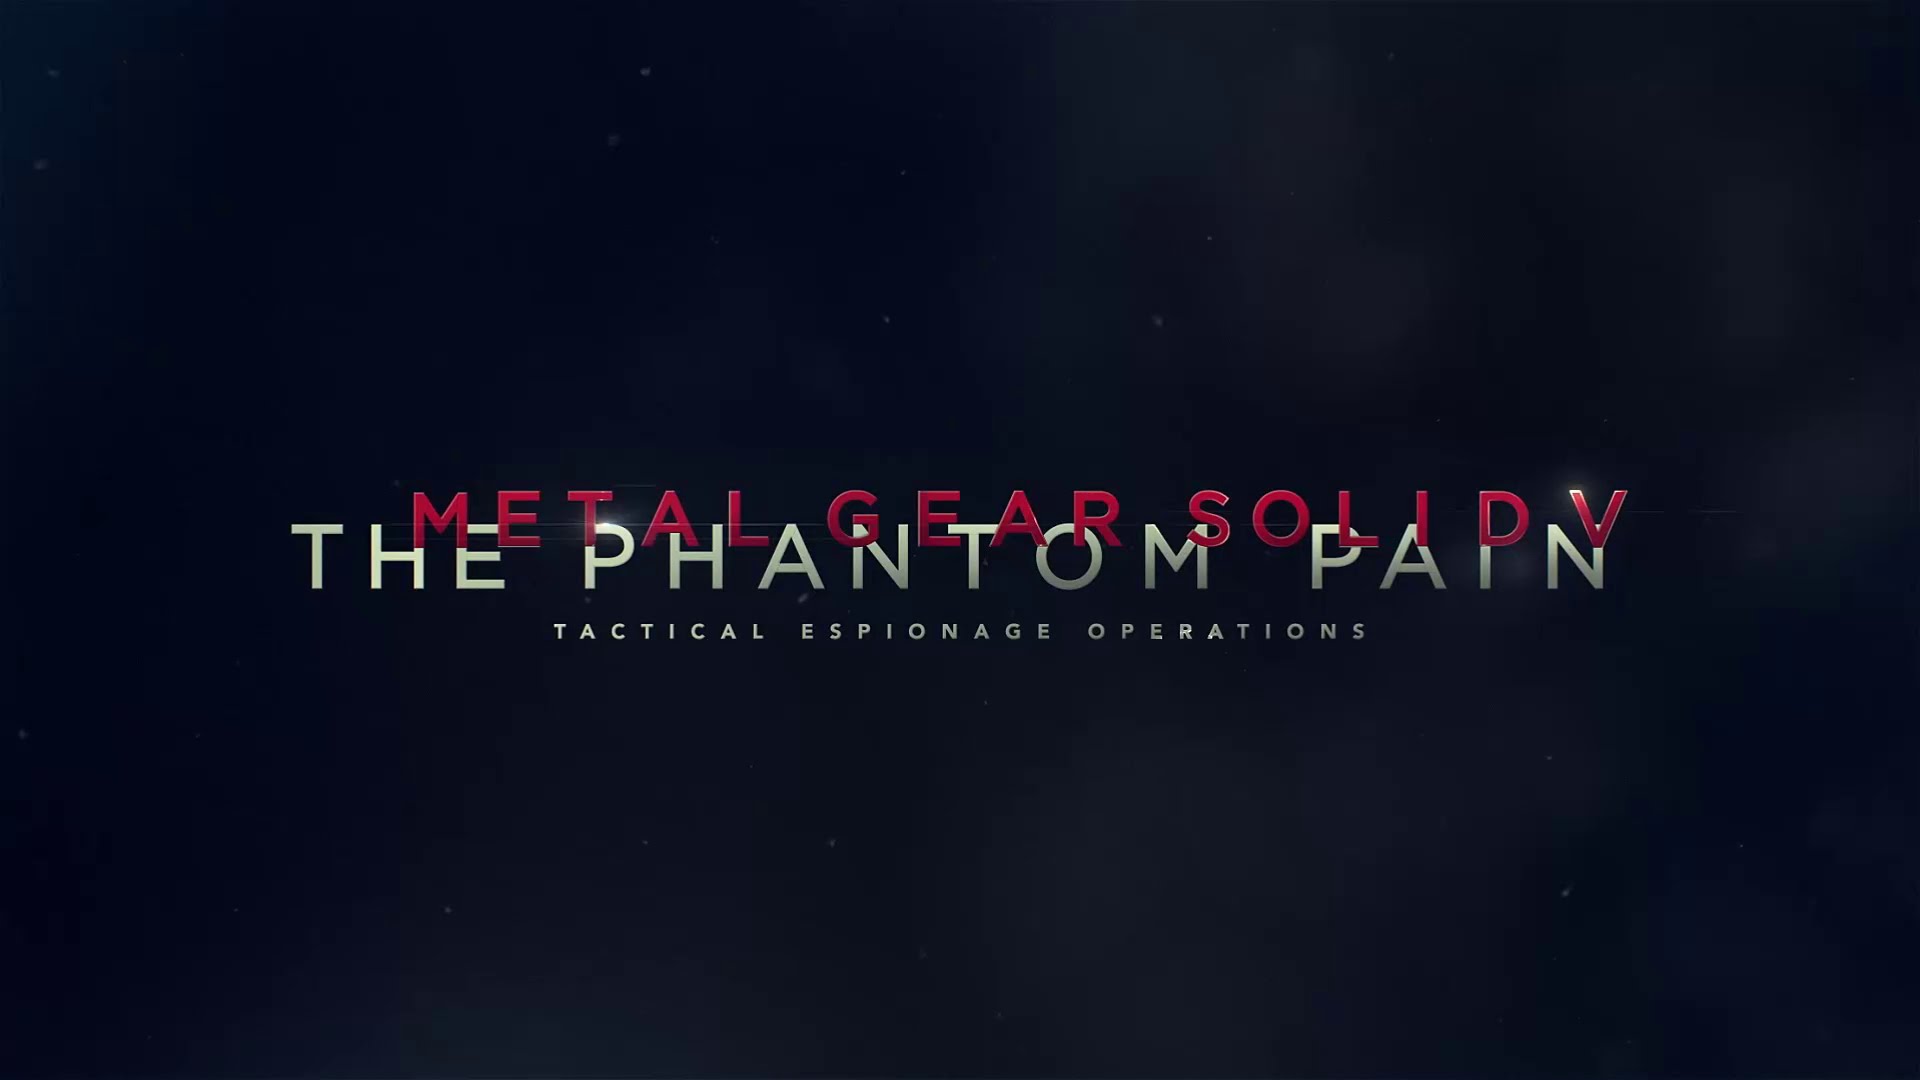 50+] The Phantom Pain Wallpaper - WallpaperSafari